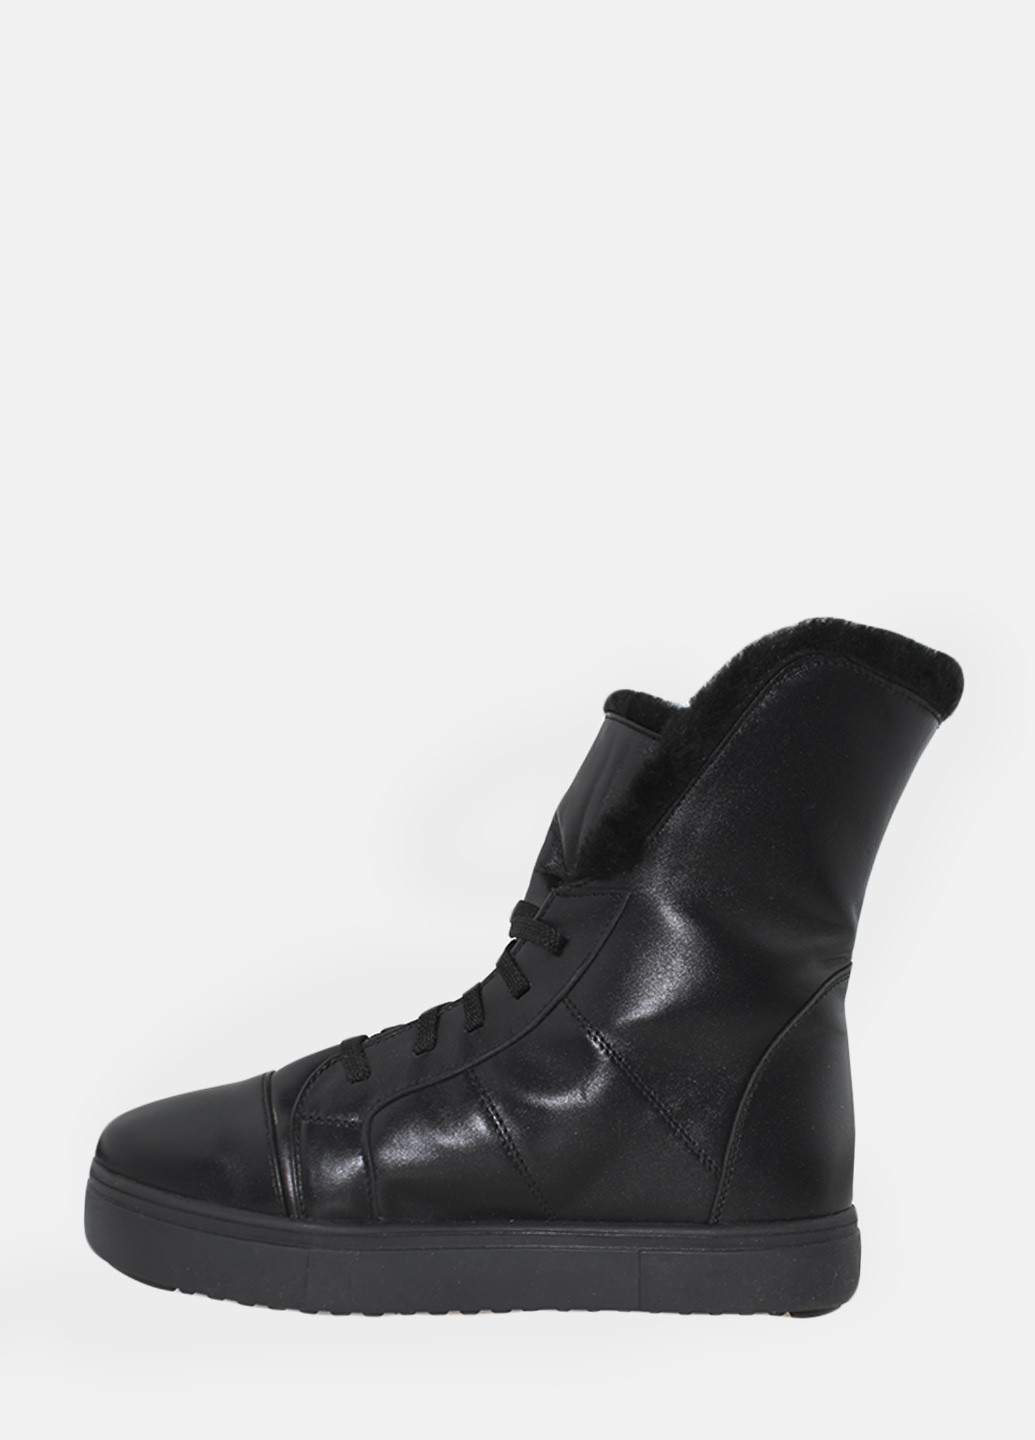 Зимние ботинки rp7701 черный Passati